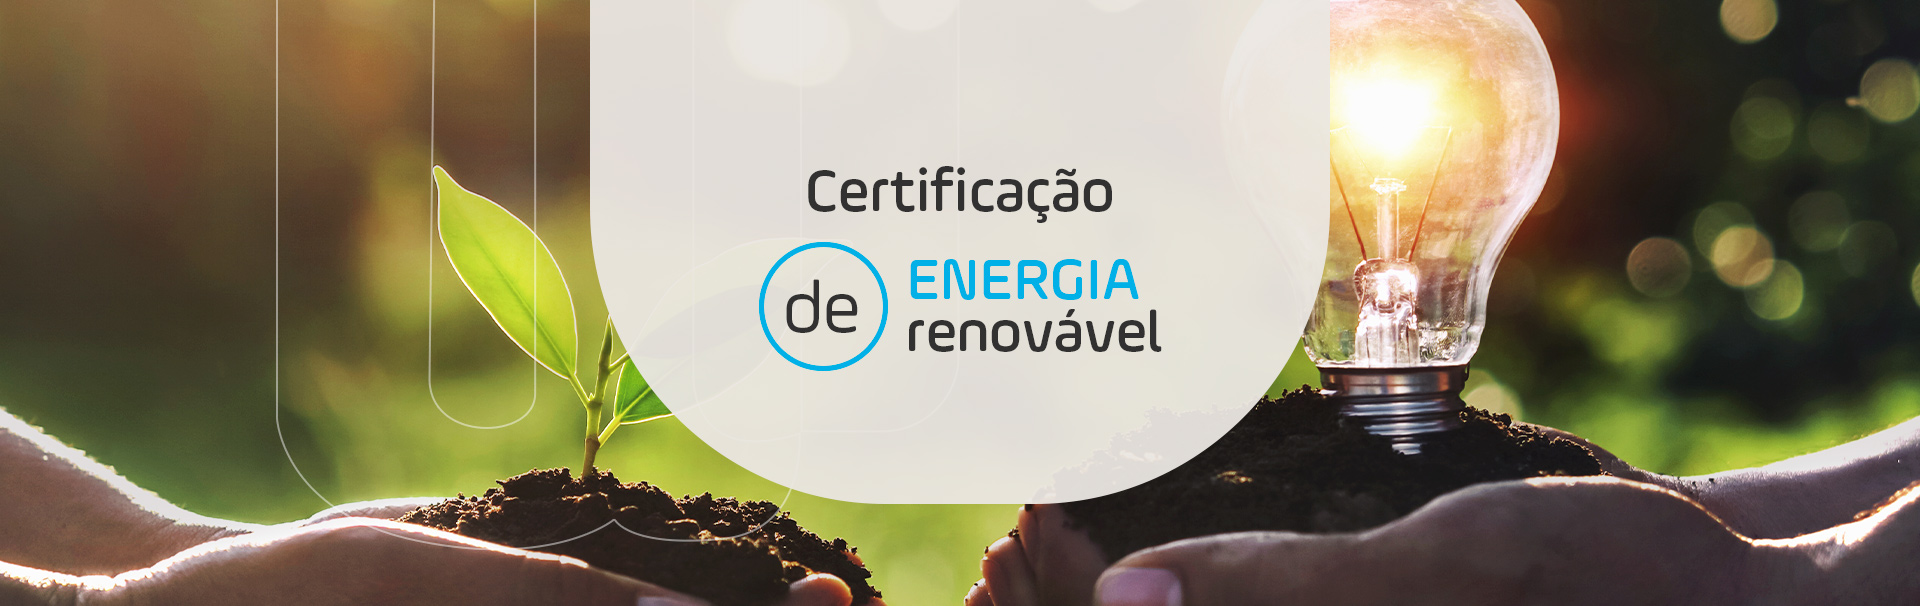 Certificação de energia renovável